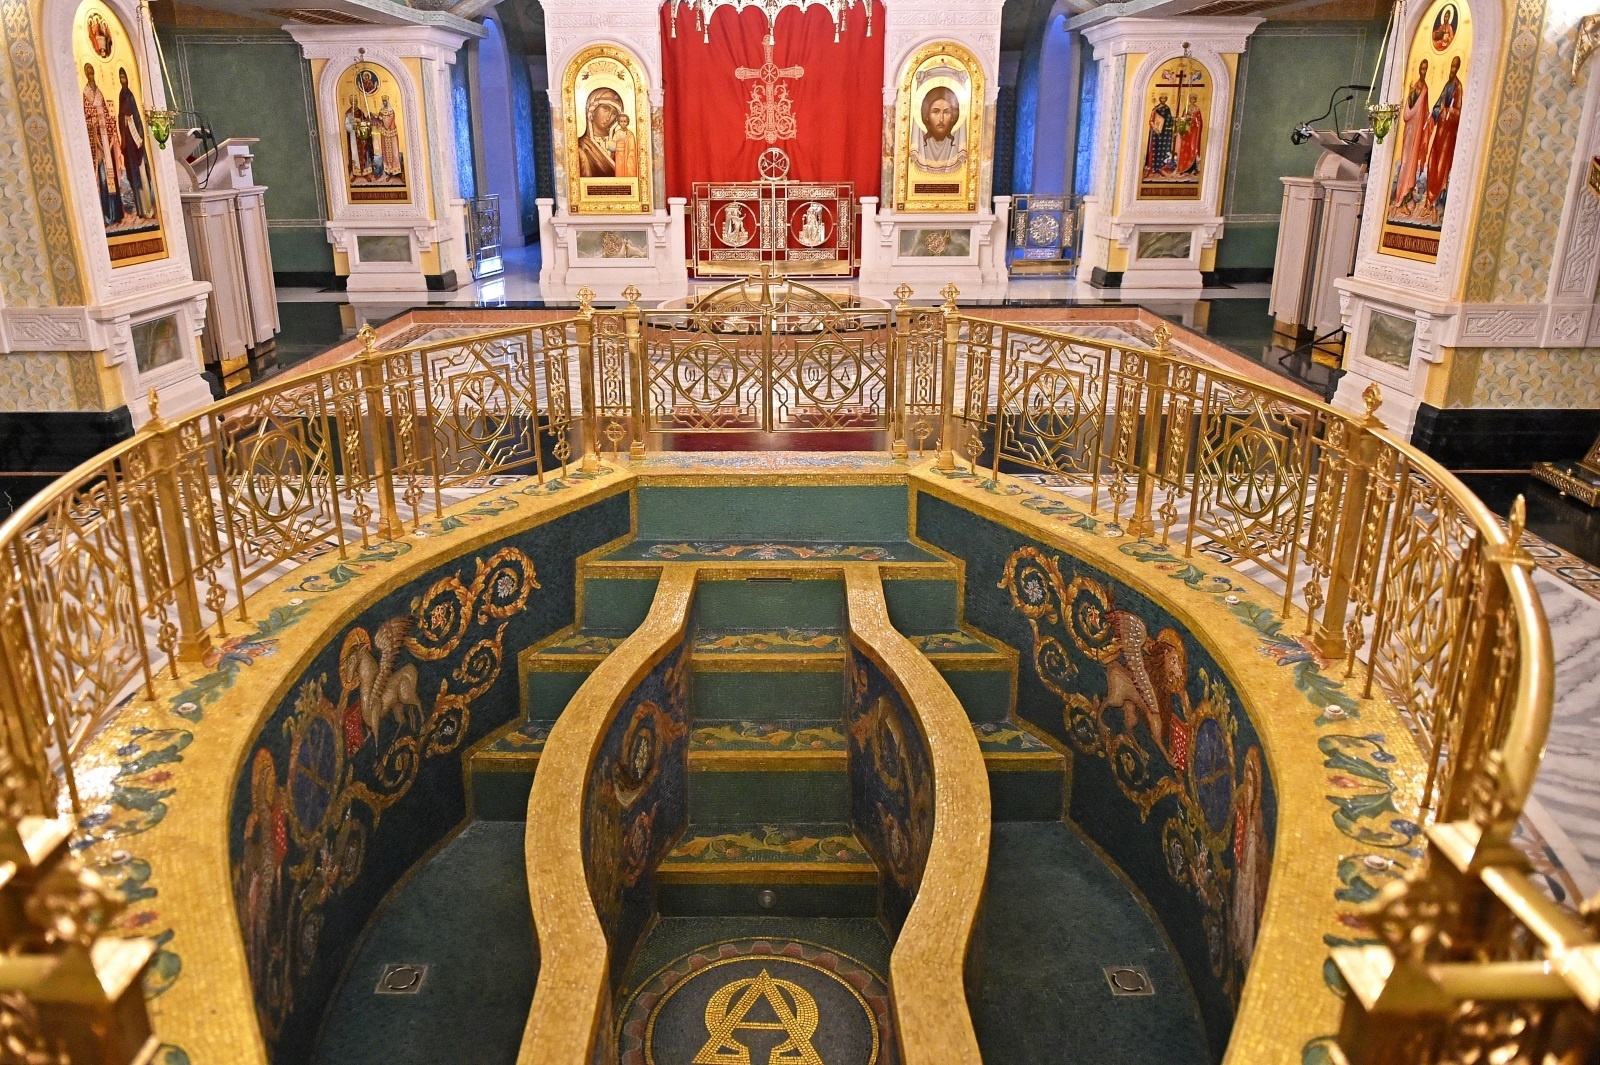 Макарьевский монастырь фото внутри